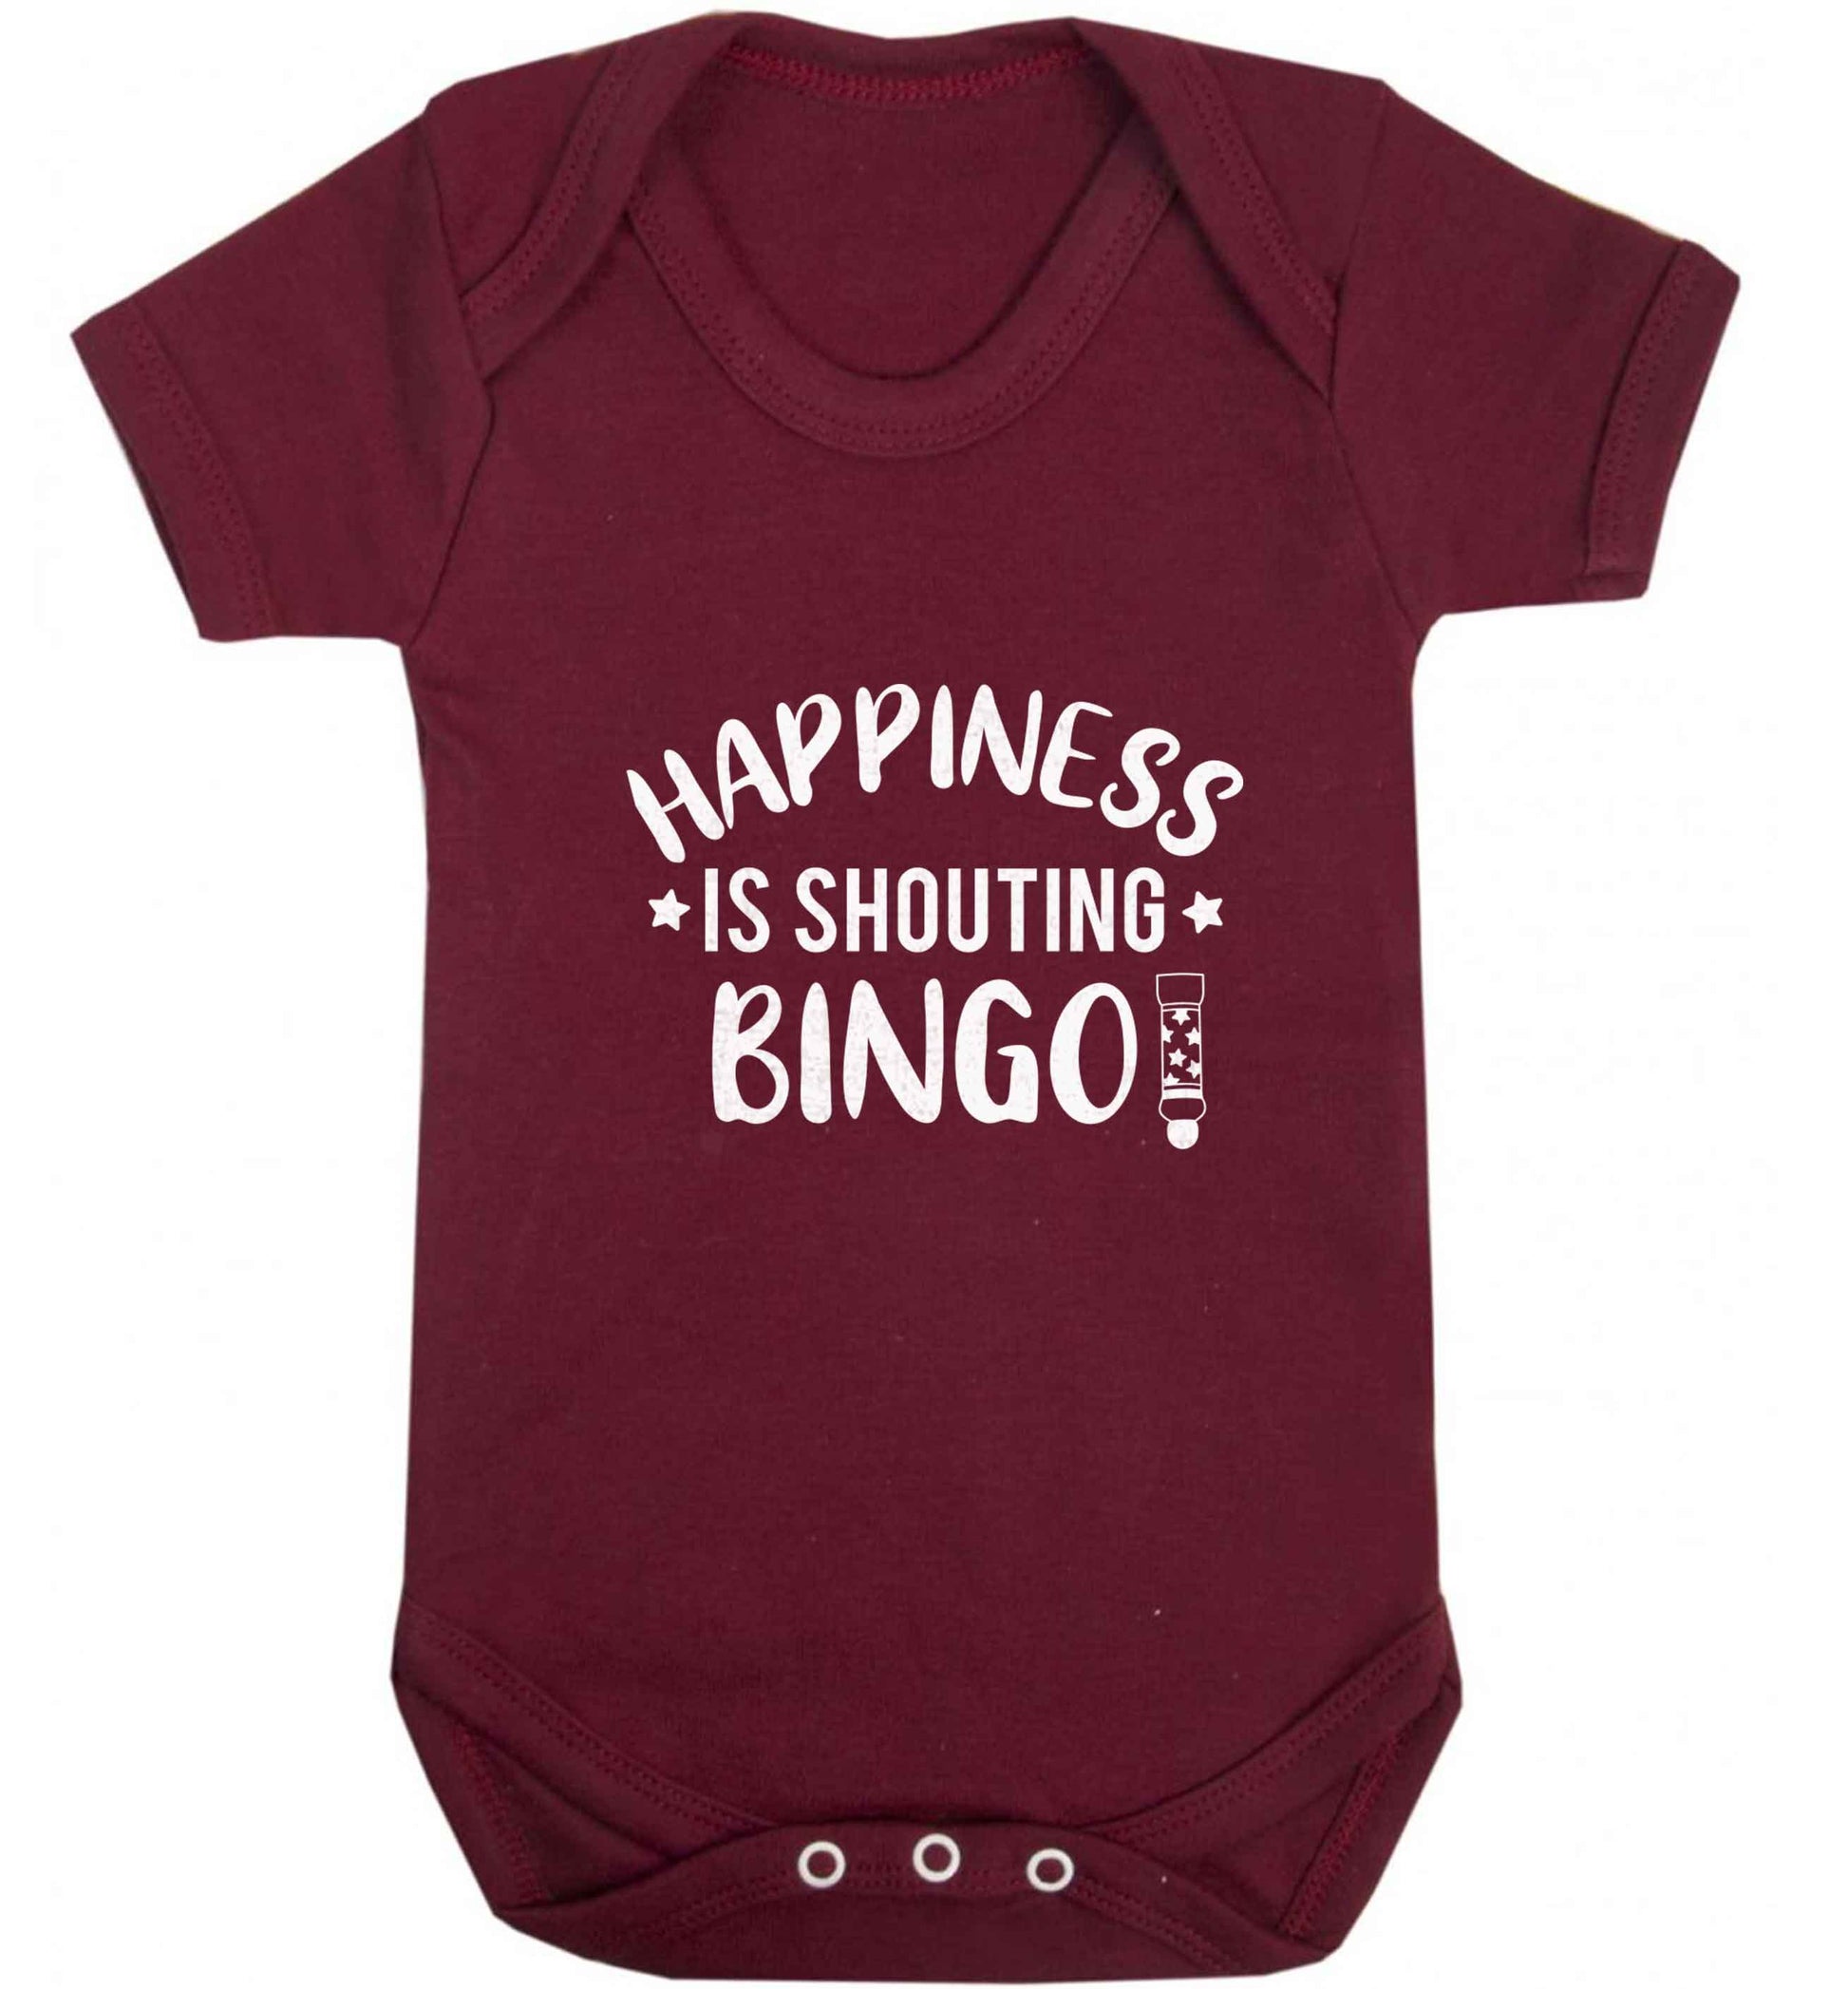 Happiness is shouting bingo! baby vest maroon 18-24 months